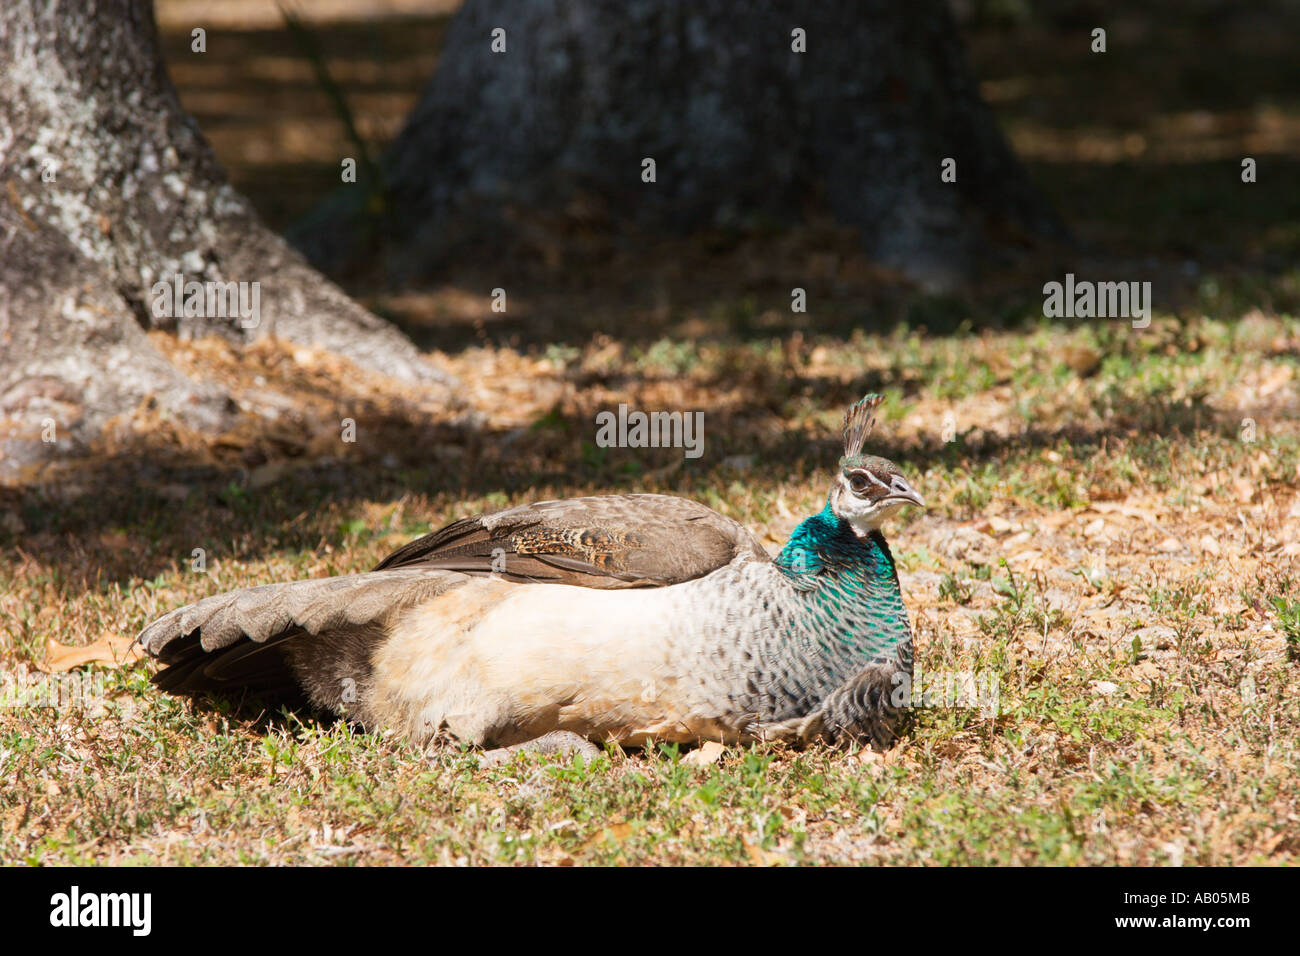 Female India Blue Peacock Stock Photo